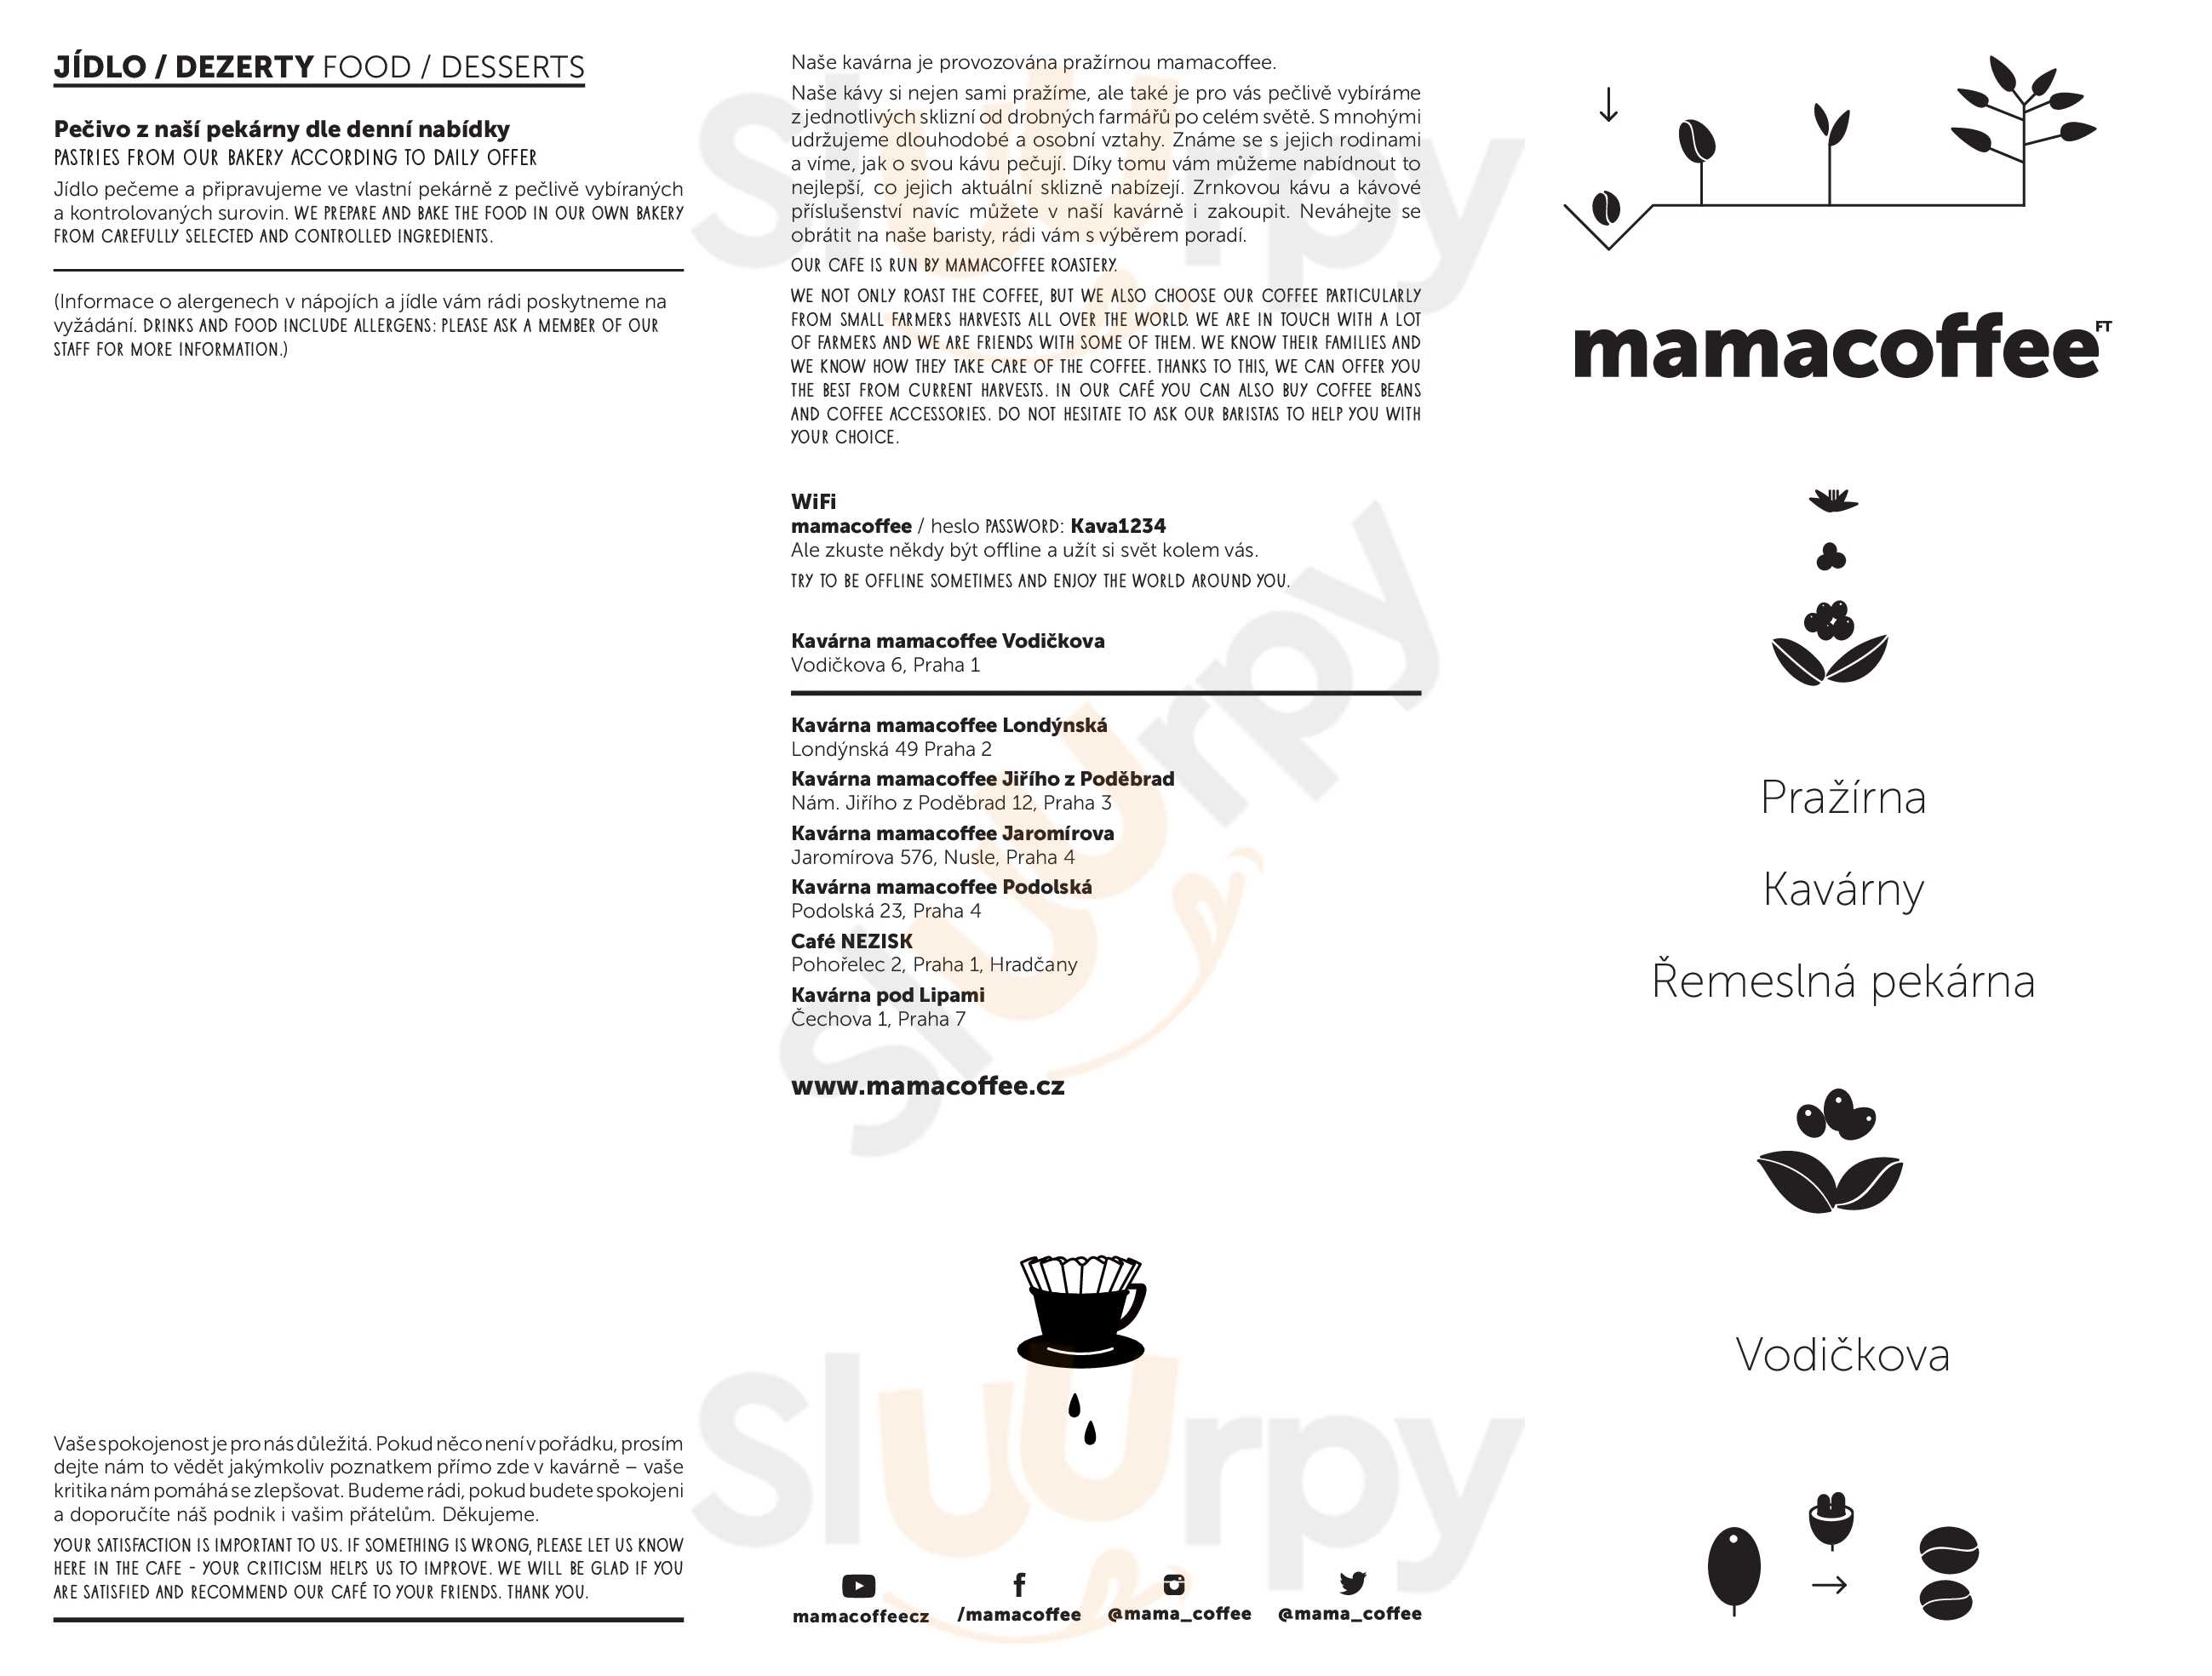 Mamacoffee (vodickova) Praha Menu - 1